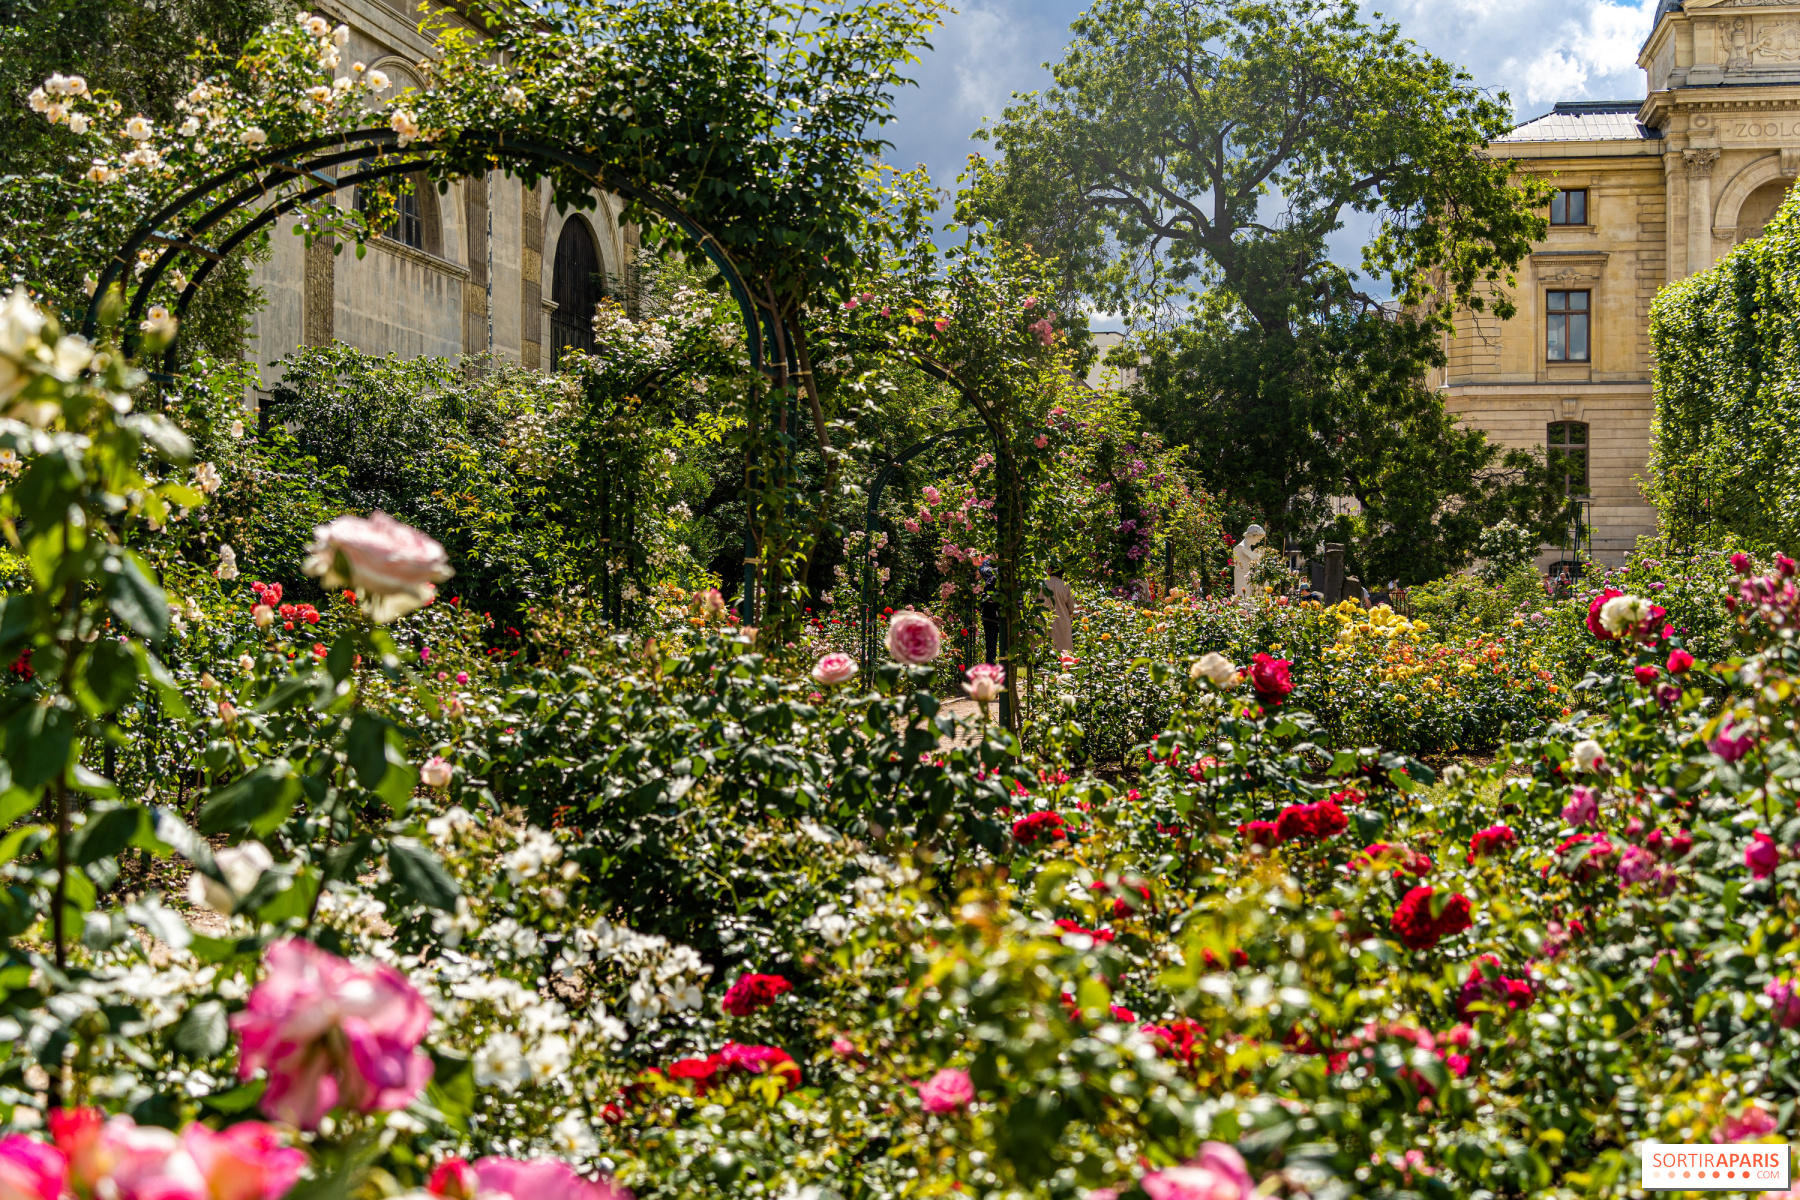 The Jardin des Plantes rose garden unveils its beautiful colors